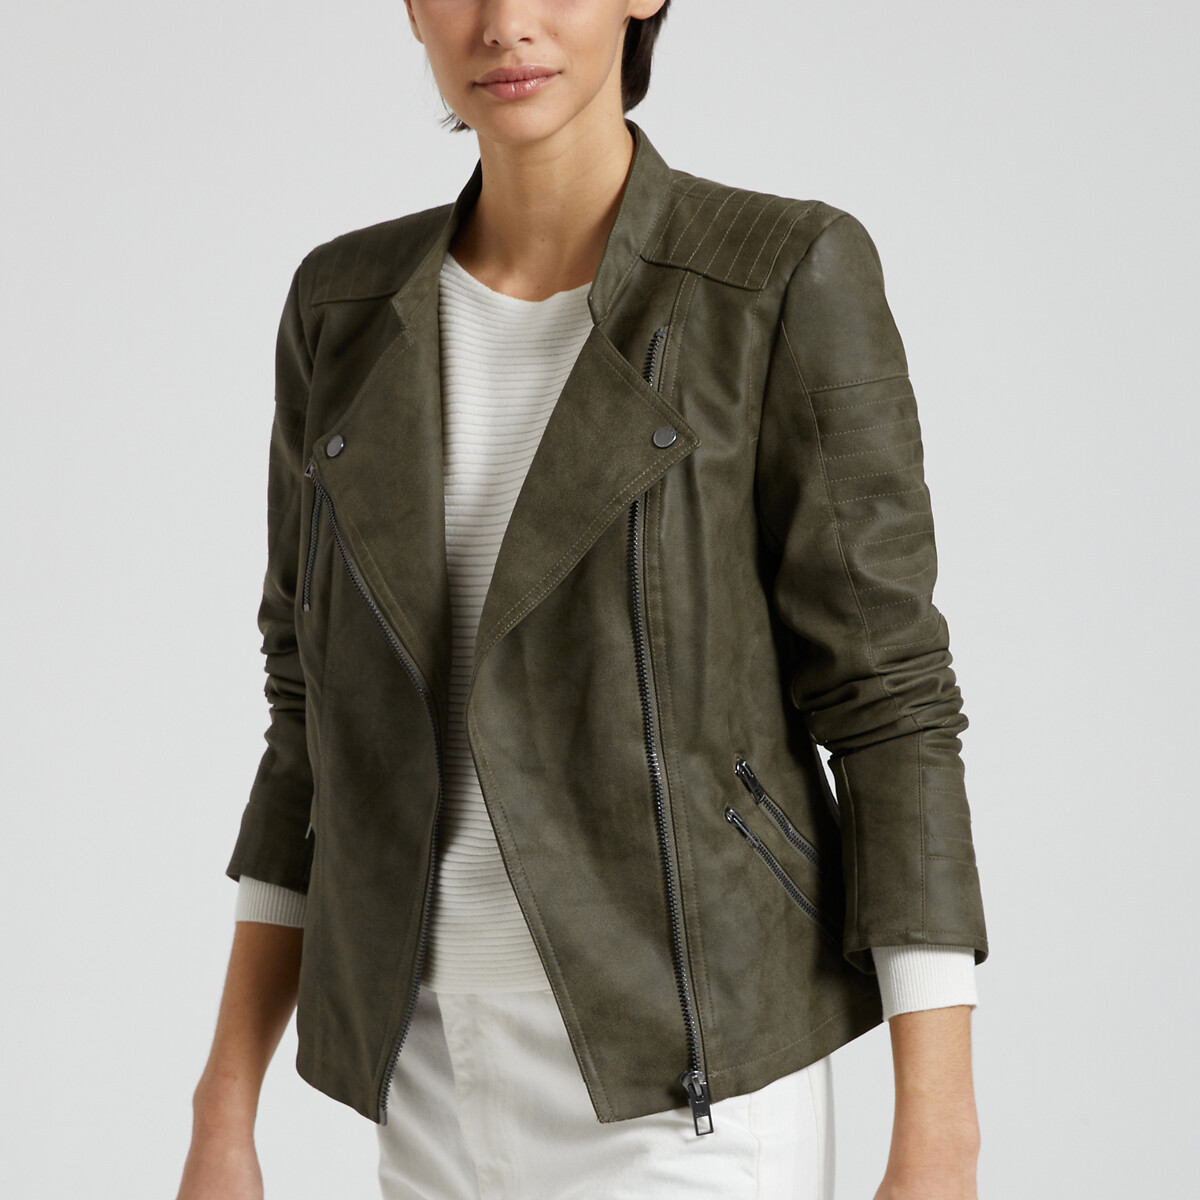 Куртка короткая из искусственной кожи  34 (FR) - 40 (RUS) зеленый LaRedoute, размер 34 (FR) - 40 (RUS) Куртка короткая из искусственной кожи  34 (FR) - 40 (RUS) зеленый - фото 1